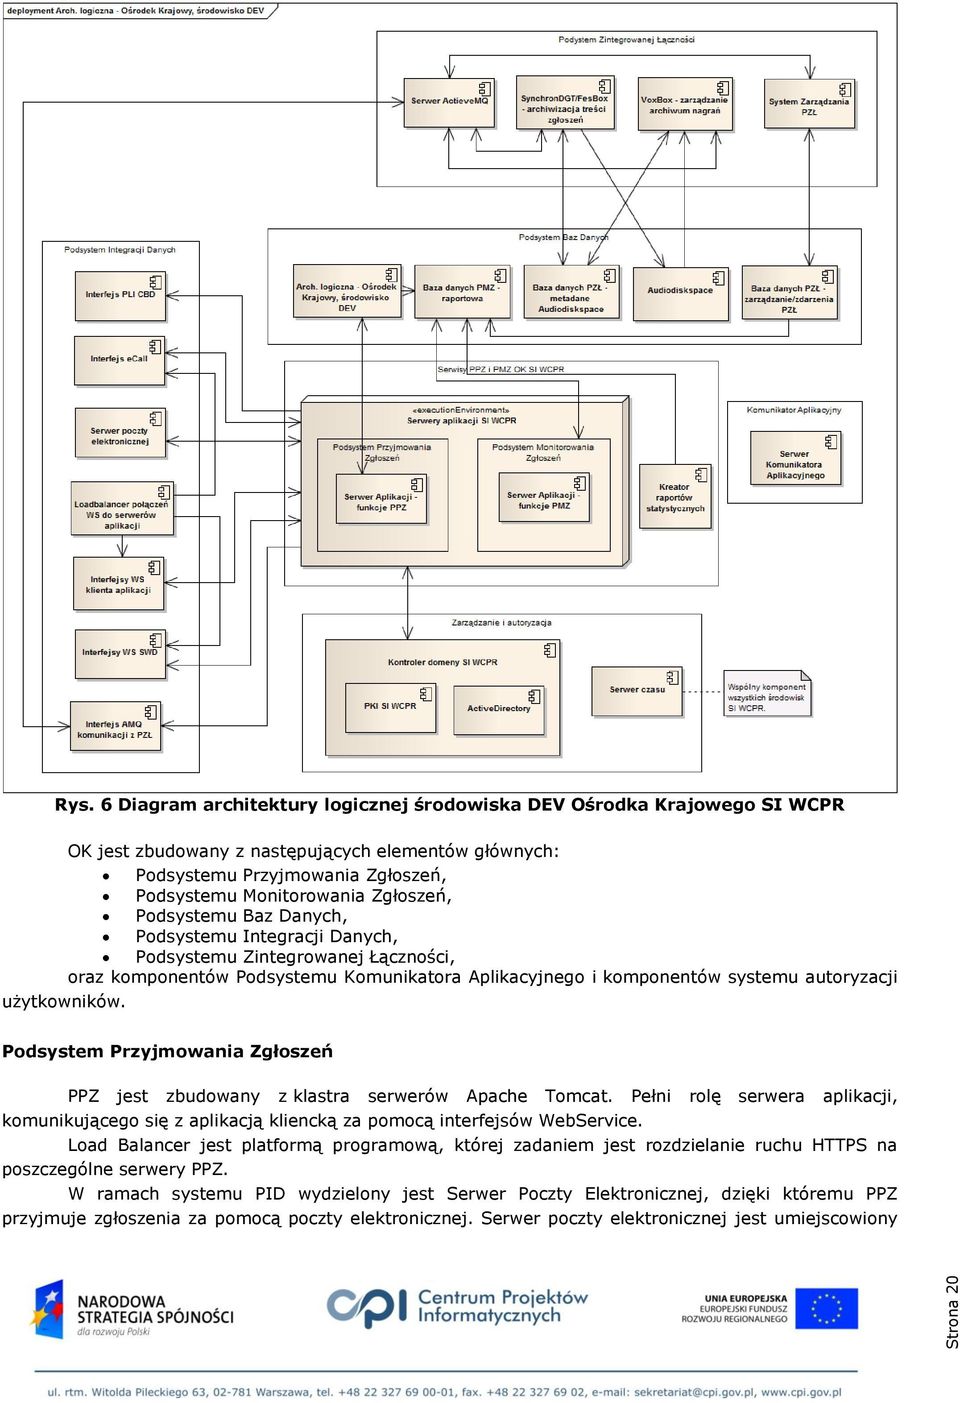 Podsystemu Baz Danych, Podsystemu Integracji Danych, Podsystemu Zintegrowanej Łączności, oraz komponentów Podsystemu Komunikatora Aplikacyjnego i komponentów systemu autoryzacji użytkowników.